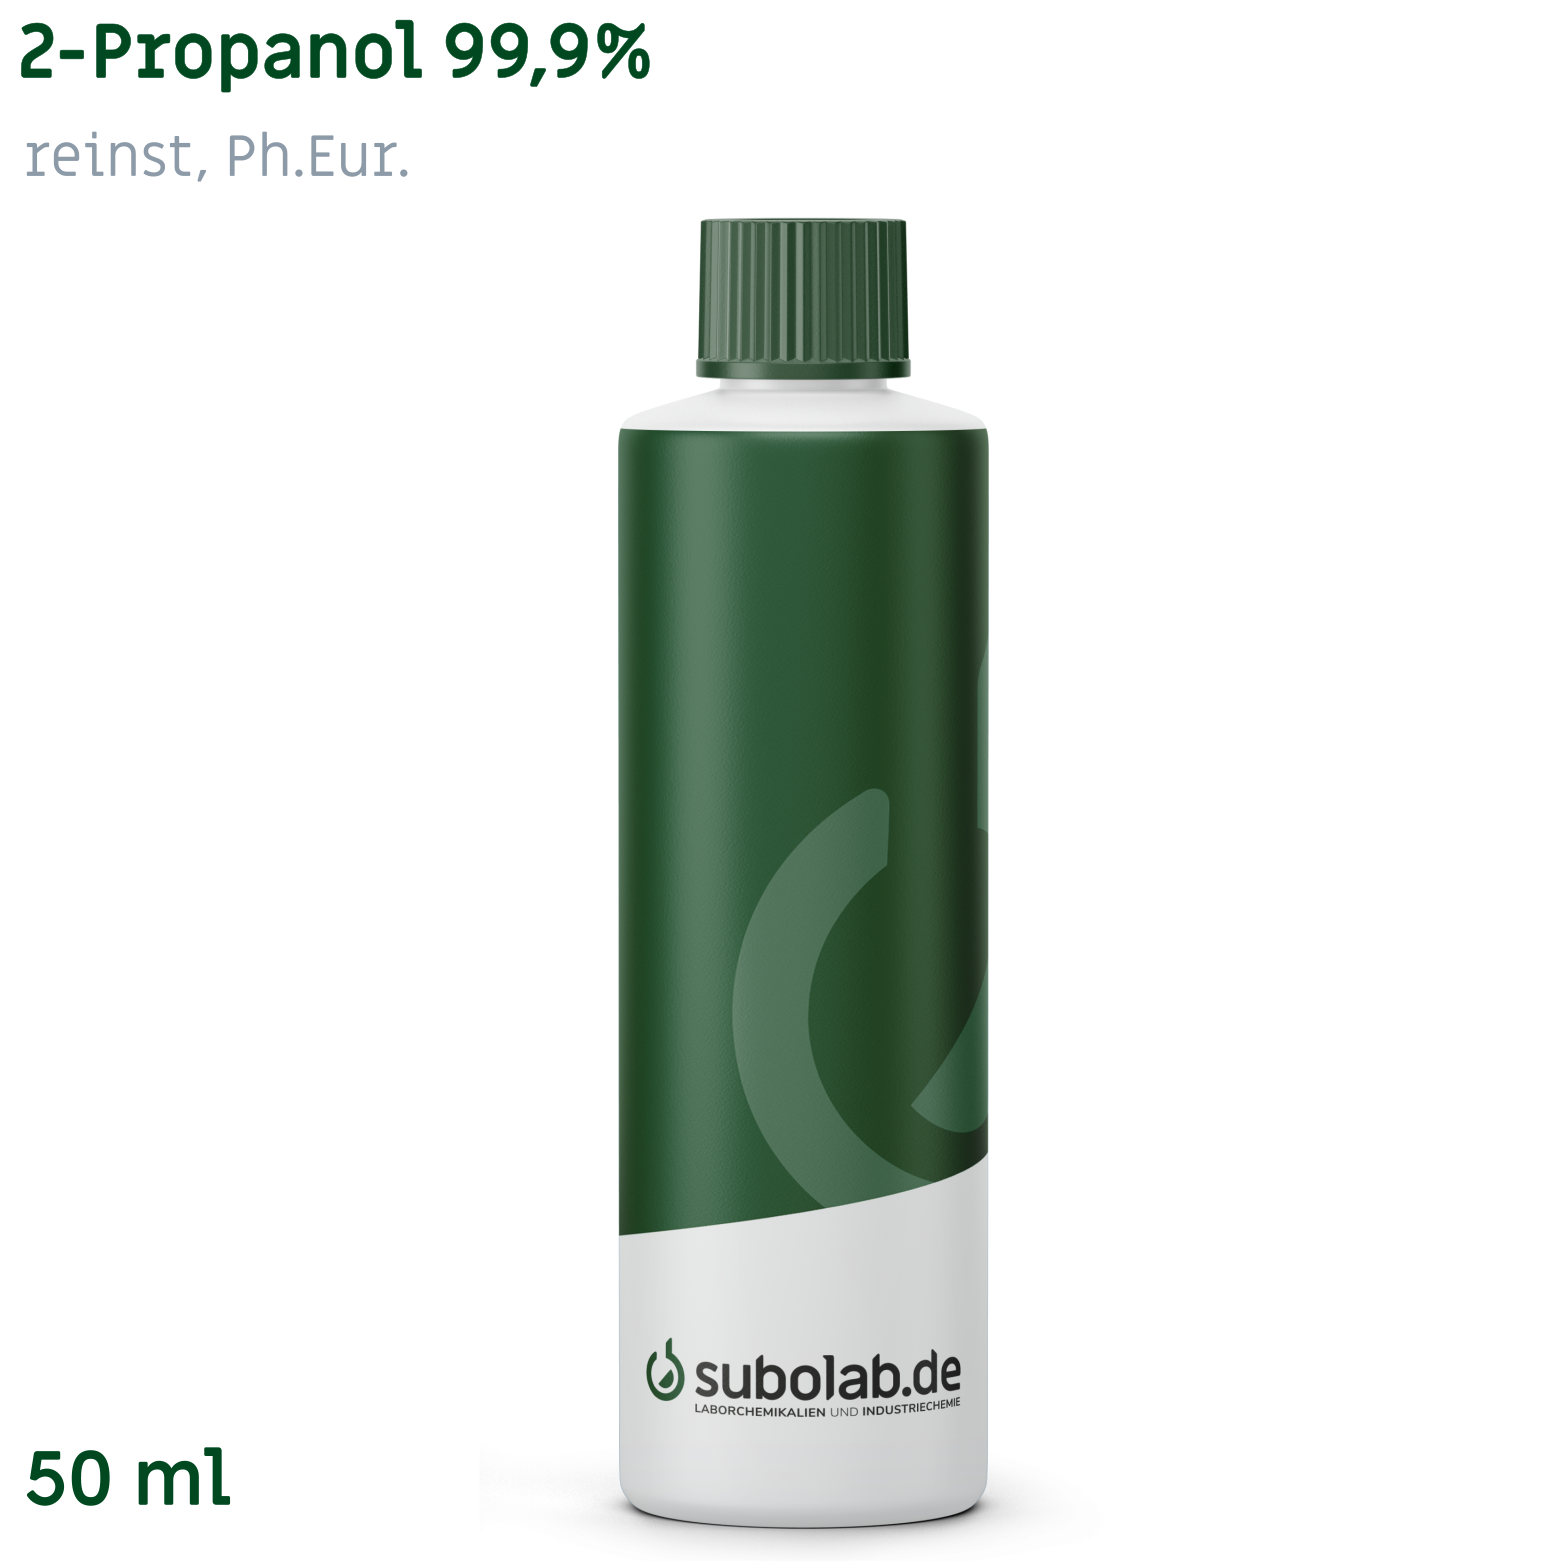 Bild von 2-Propanol 99,9% reinst, Ph.Eur. (50 ml)